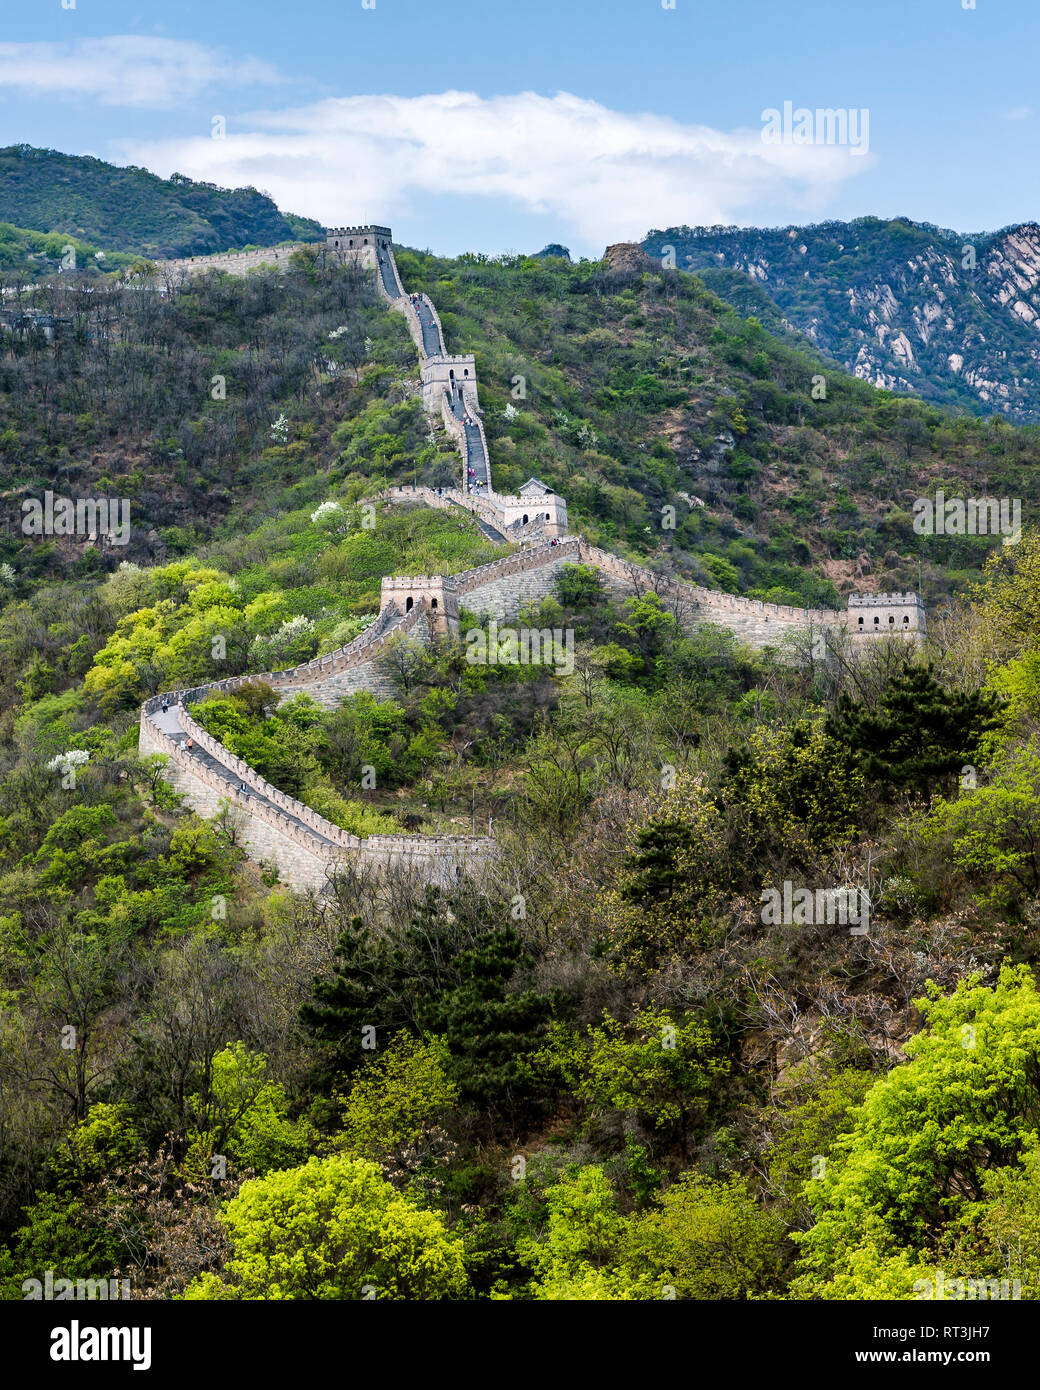 Los turistas caminata a lo largo de la Gran Muralla de China en Mutianyu. Varias torres de vigilancia puede ser visto como la pared sube por la montaña a través de un espeso bosque. Foto de stock